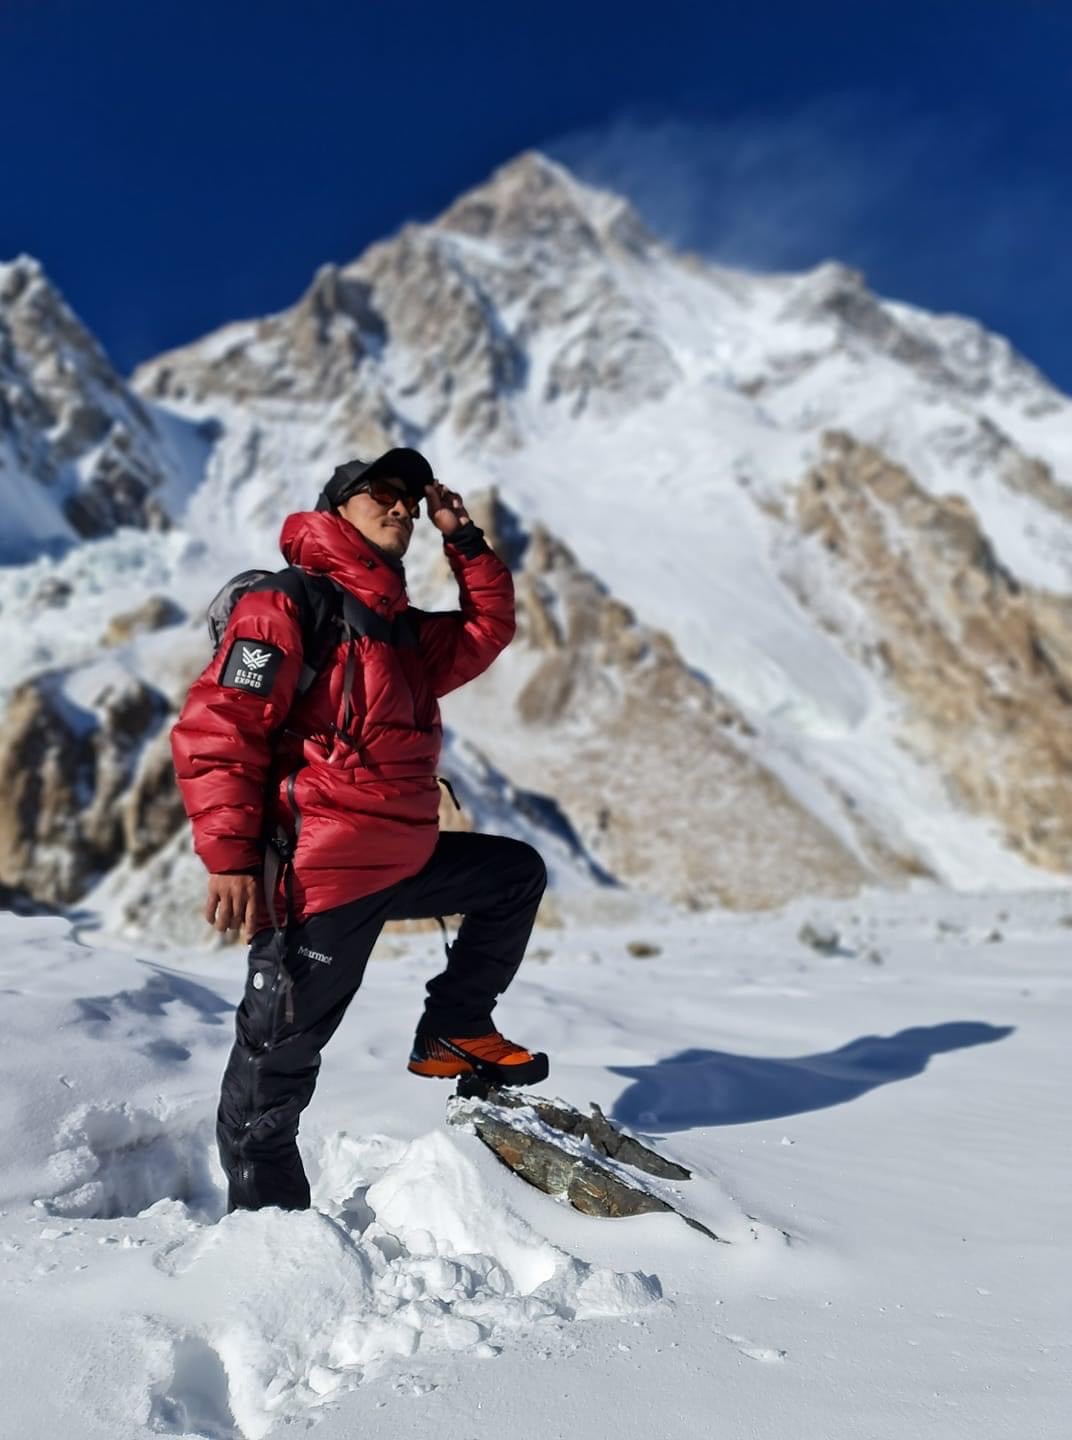 Гельже Шерпа (Gelje Sherpa): С К2 на заднем фоне и взглядом на Броуд-Пик - следующую цель